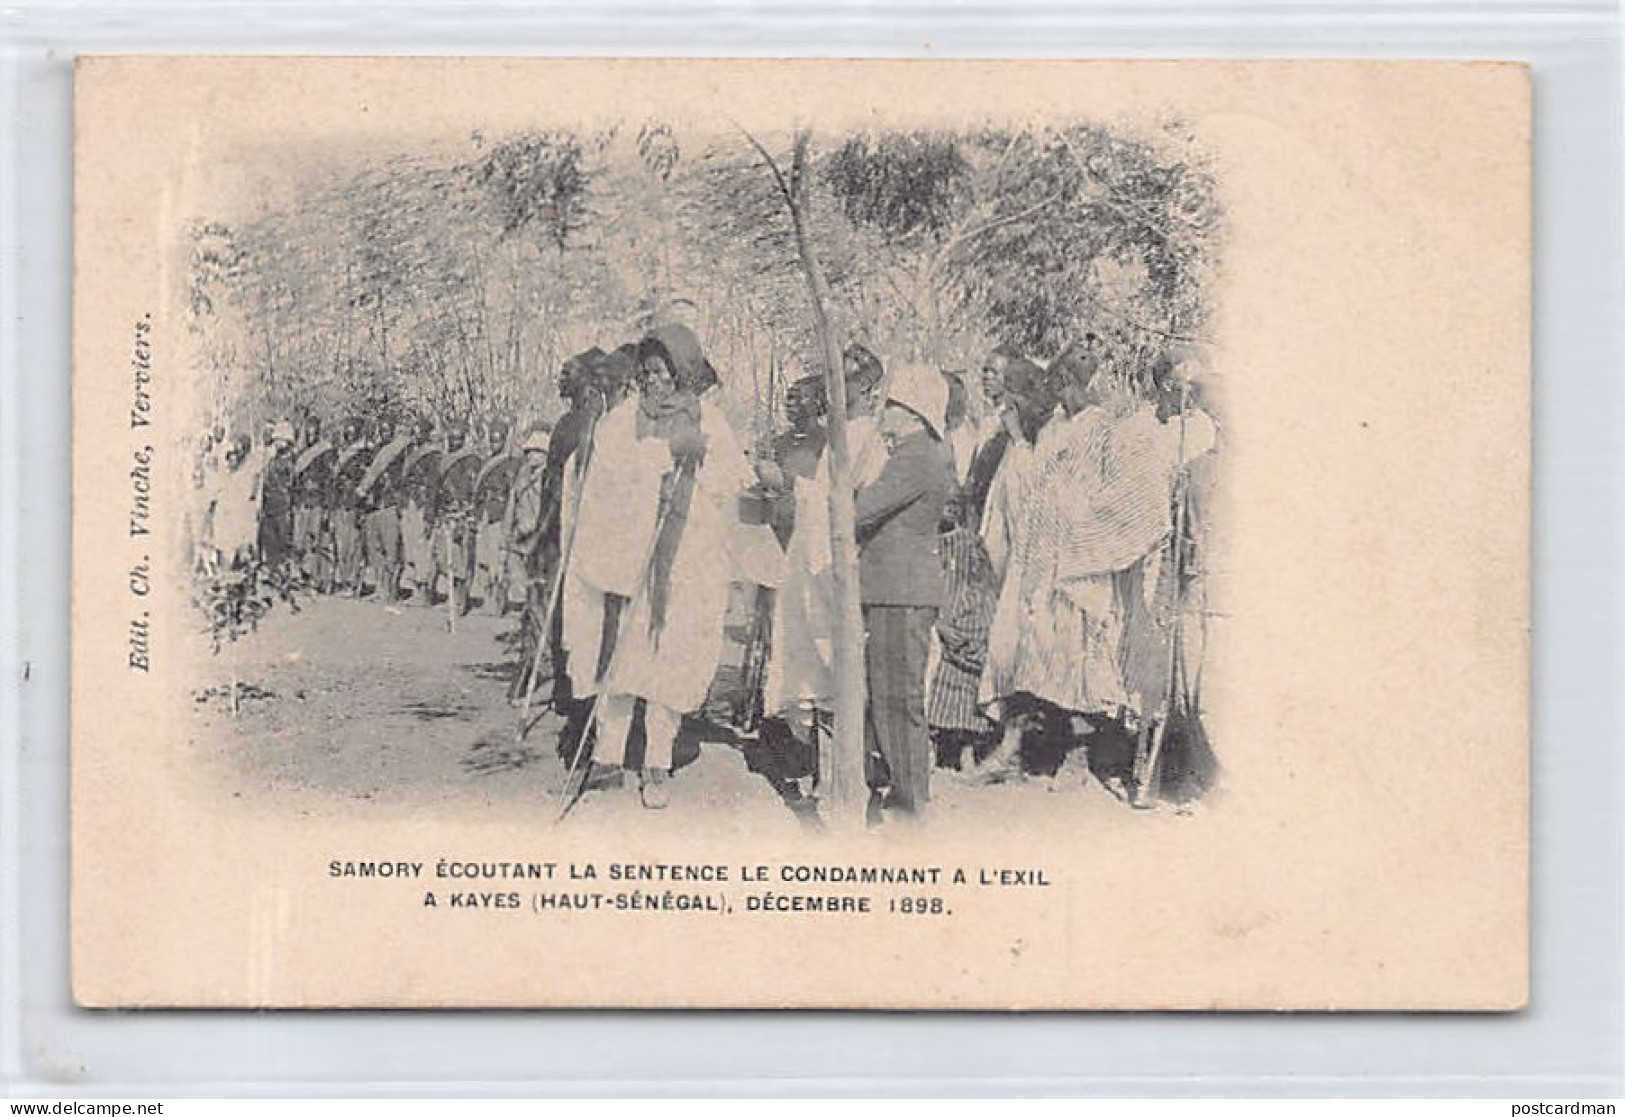 Mali - KAYES - Samory écoutant La Sentence Le Condamnant à L'exil, Décembre 1898 - Ed. Ch. Vinche  - Mali